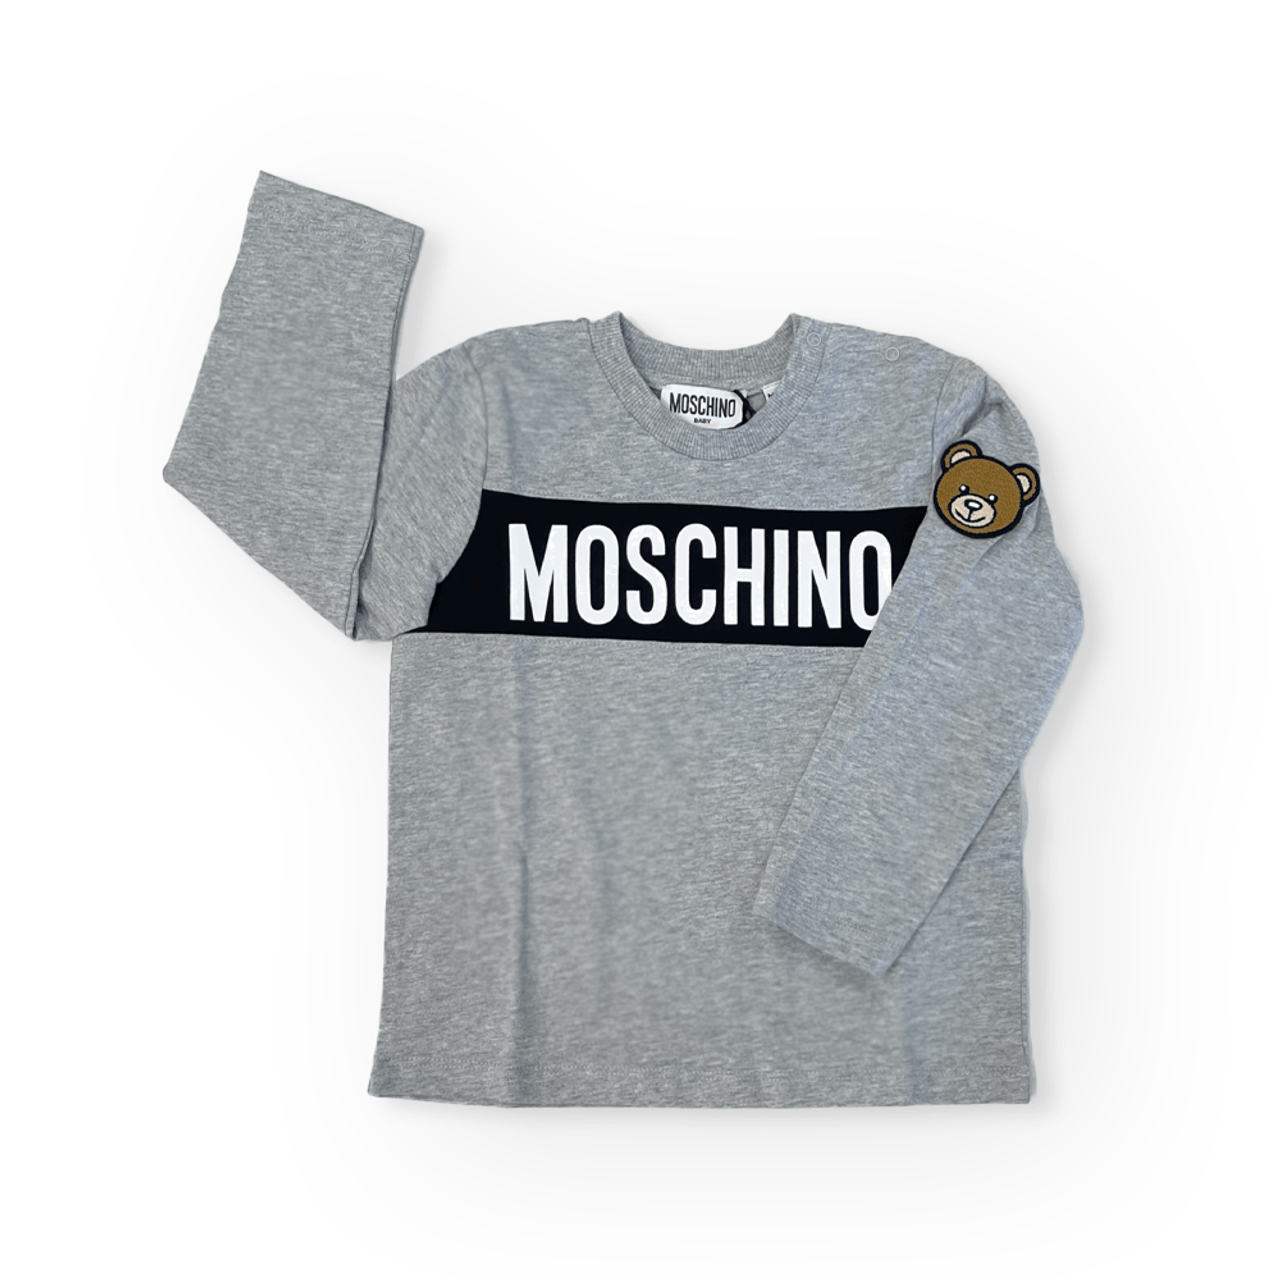 Moschino Underwear Animal Print Cotton Sweatshirt, Size Medium